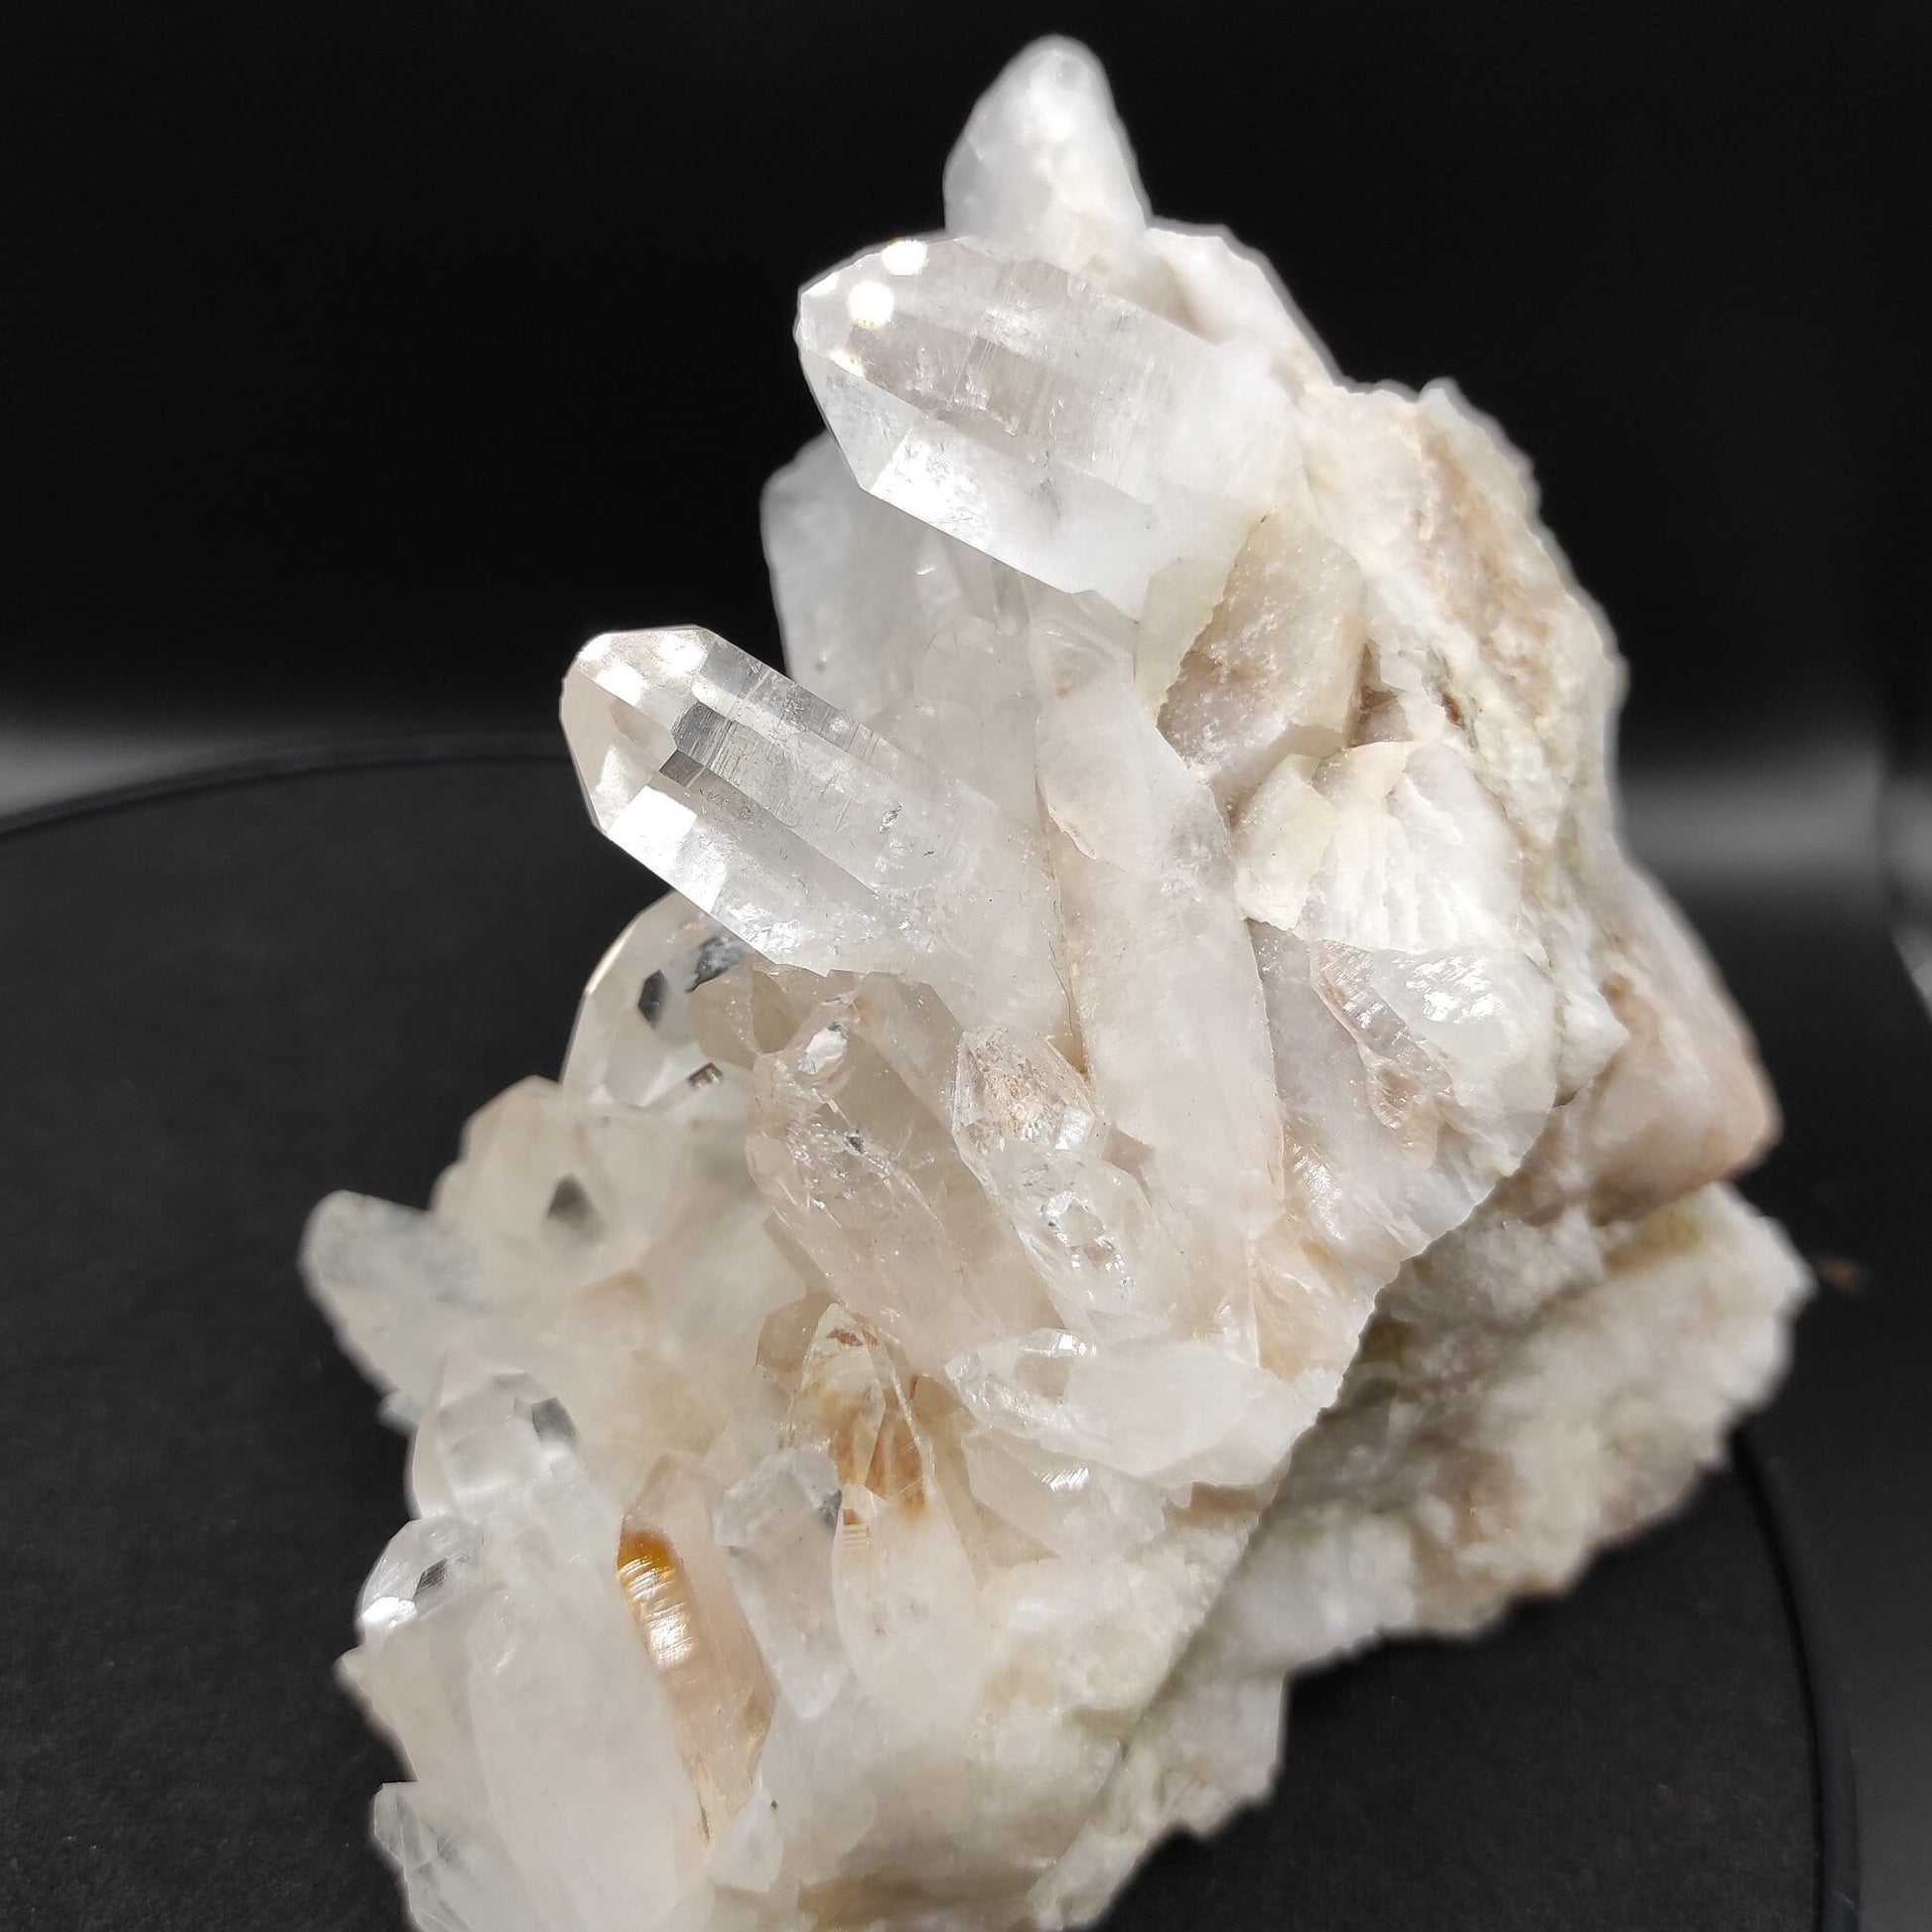 598g Large Clear Quartz Specimen - Clear Quartz Statement Pieces from Belleza, Colombia - Large Quartz Crystal Clusters - Raw Quartz